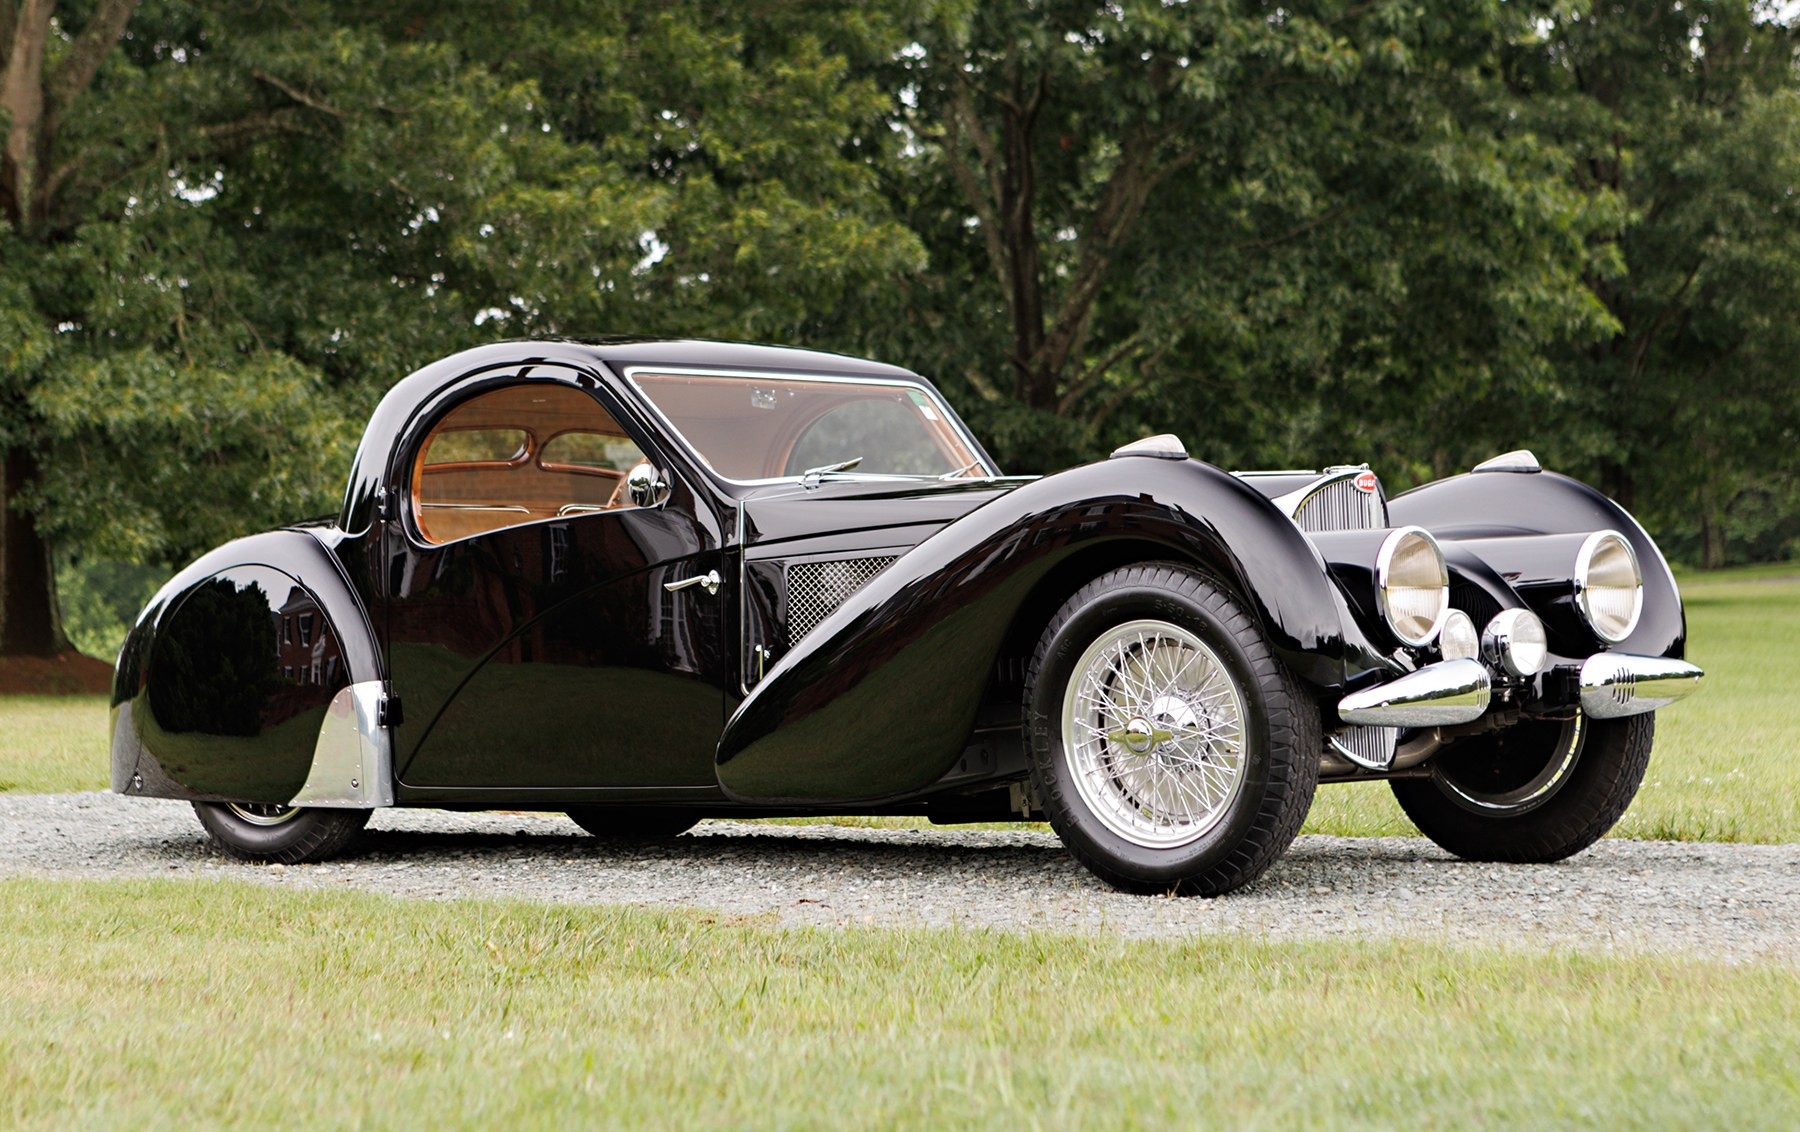 1937 Bugatti Type 57 Atalante Coupe - 9,83 milioane de euro